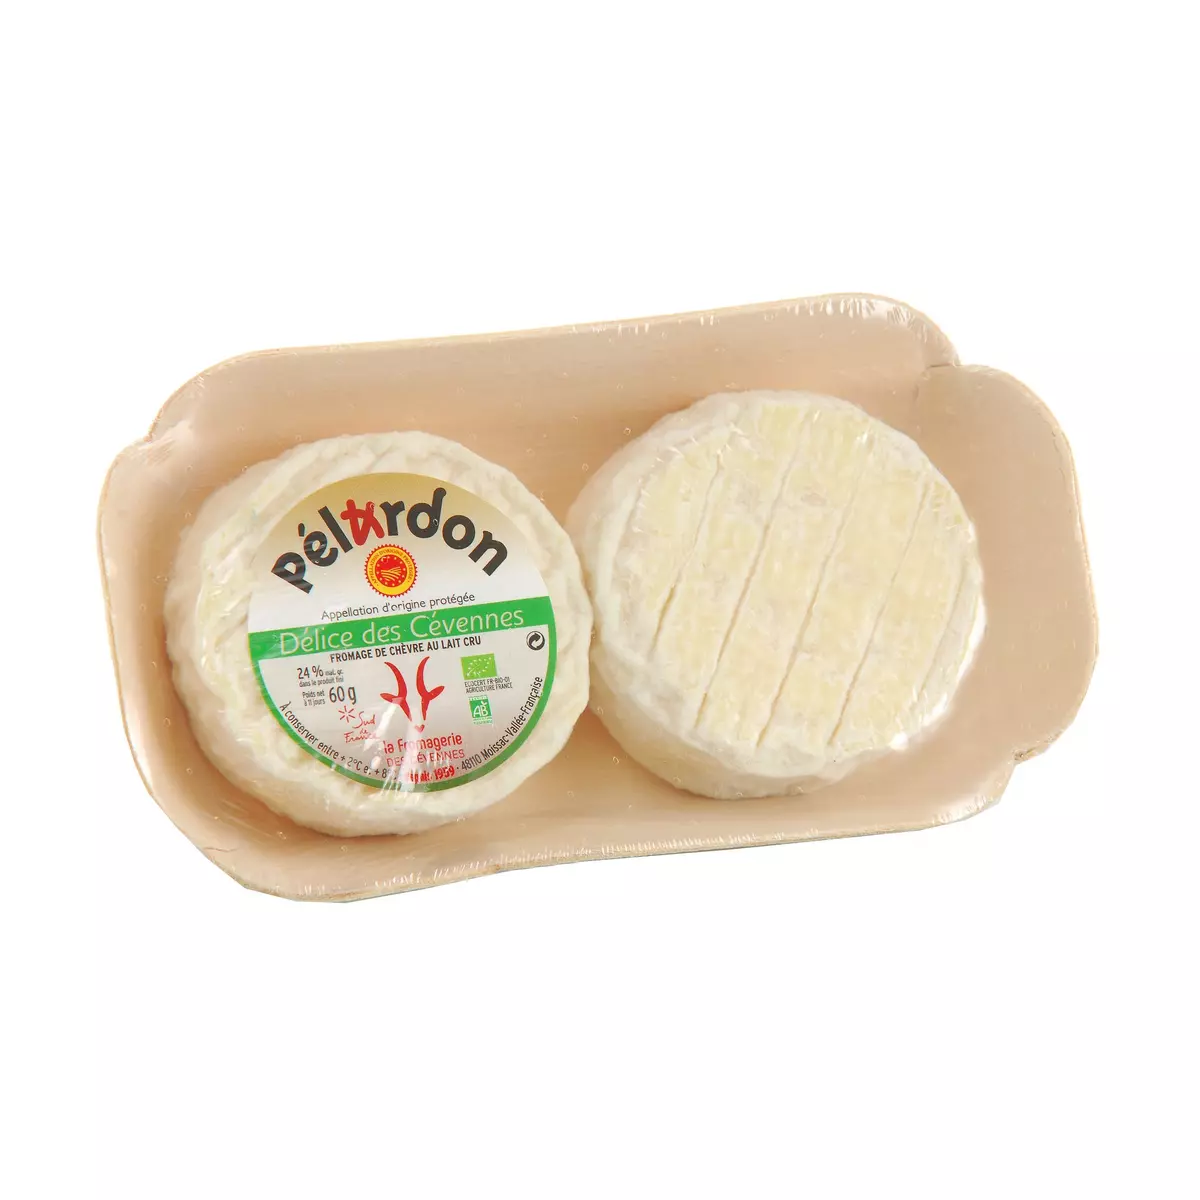 LA FROMAGERIE DES CEVENNES Pélardon fromage de chèvre au lait cru AOP bio 2x60g